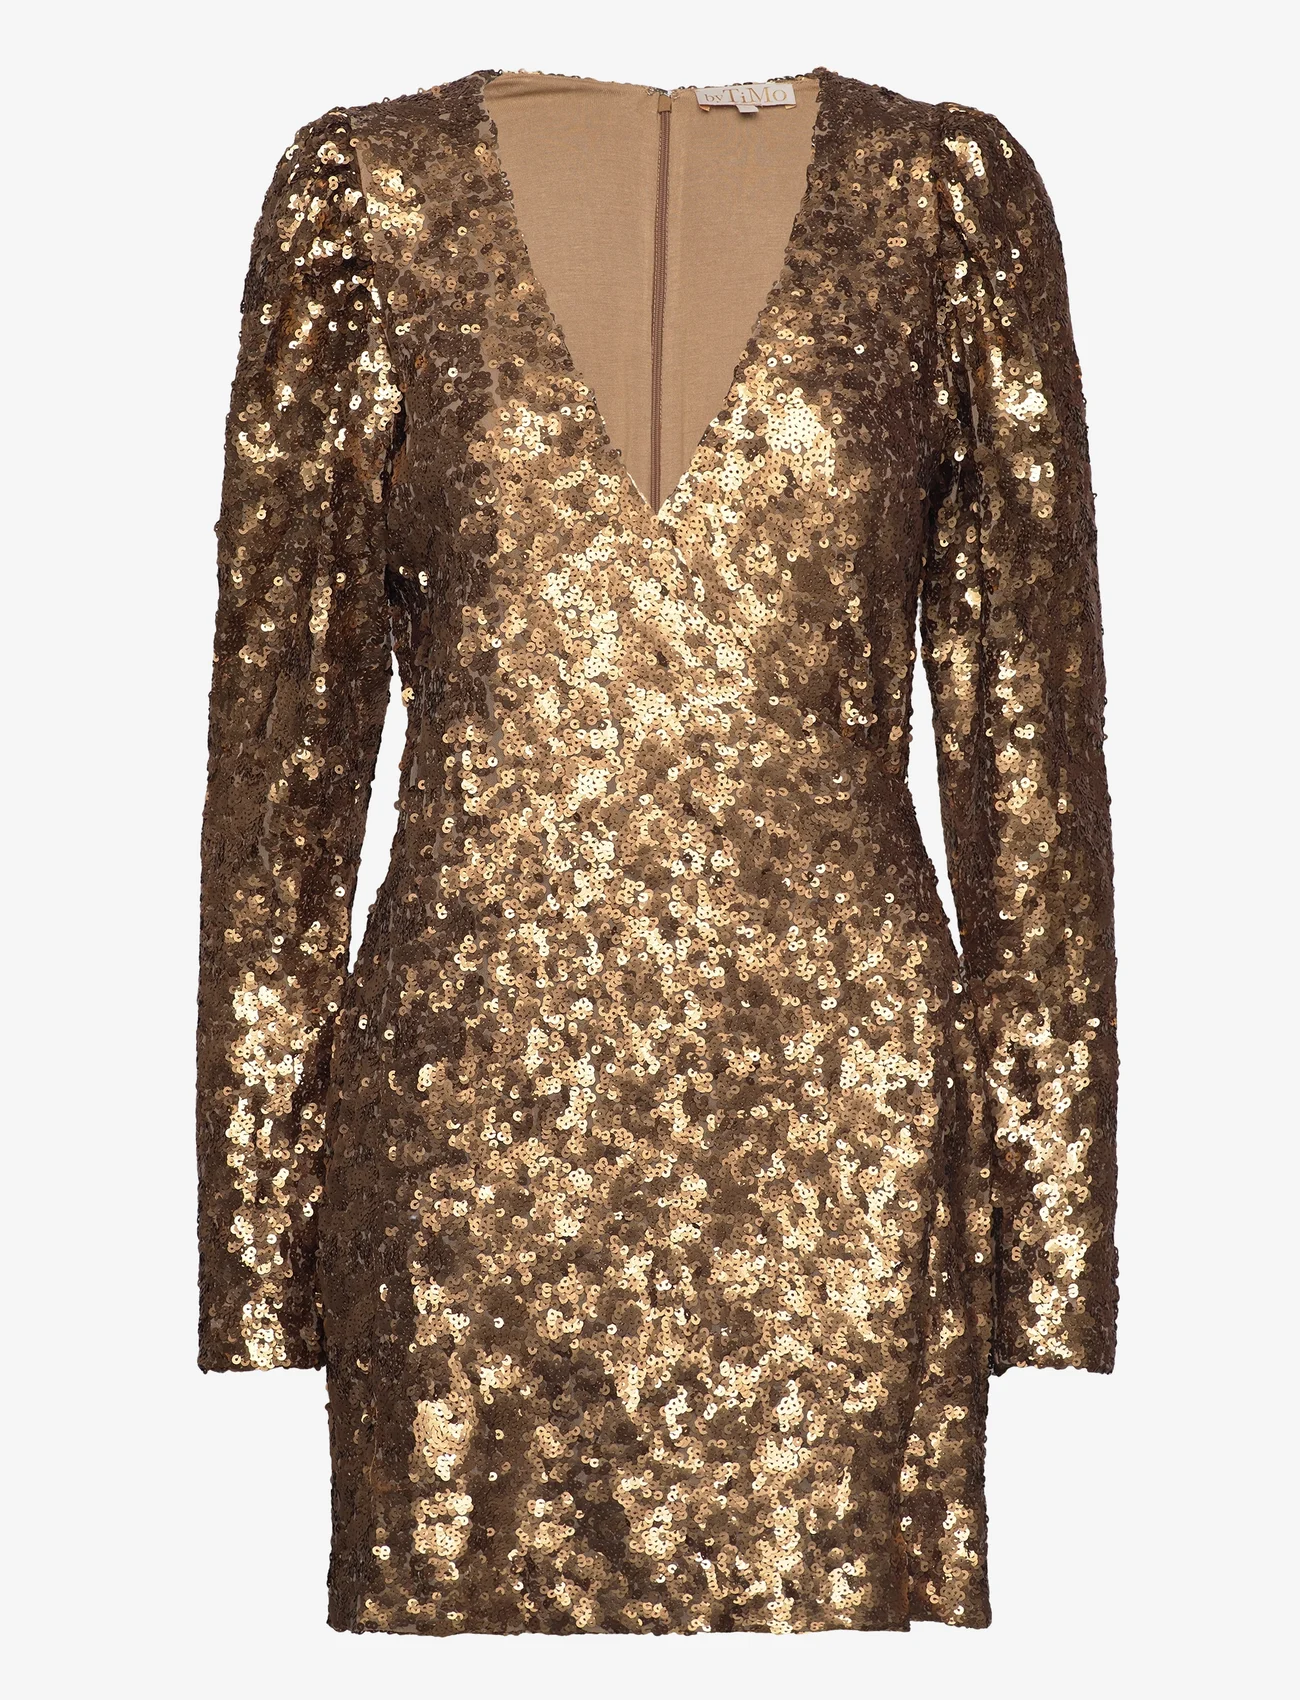 by Ti Mo - Sequins Mini Dress - odzież imprezowa w cenach outletowych - 009 - golden - 0